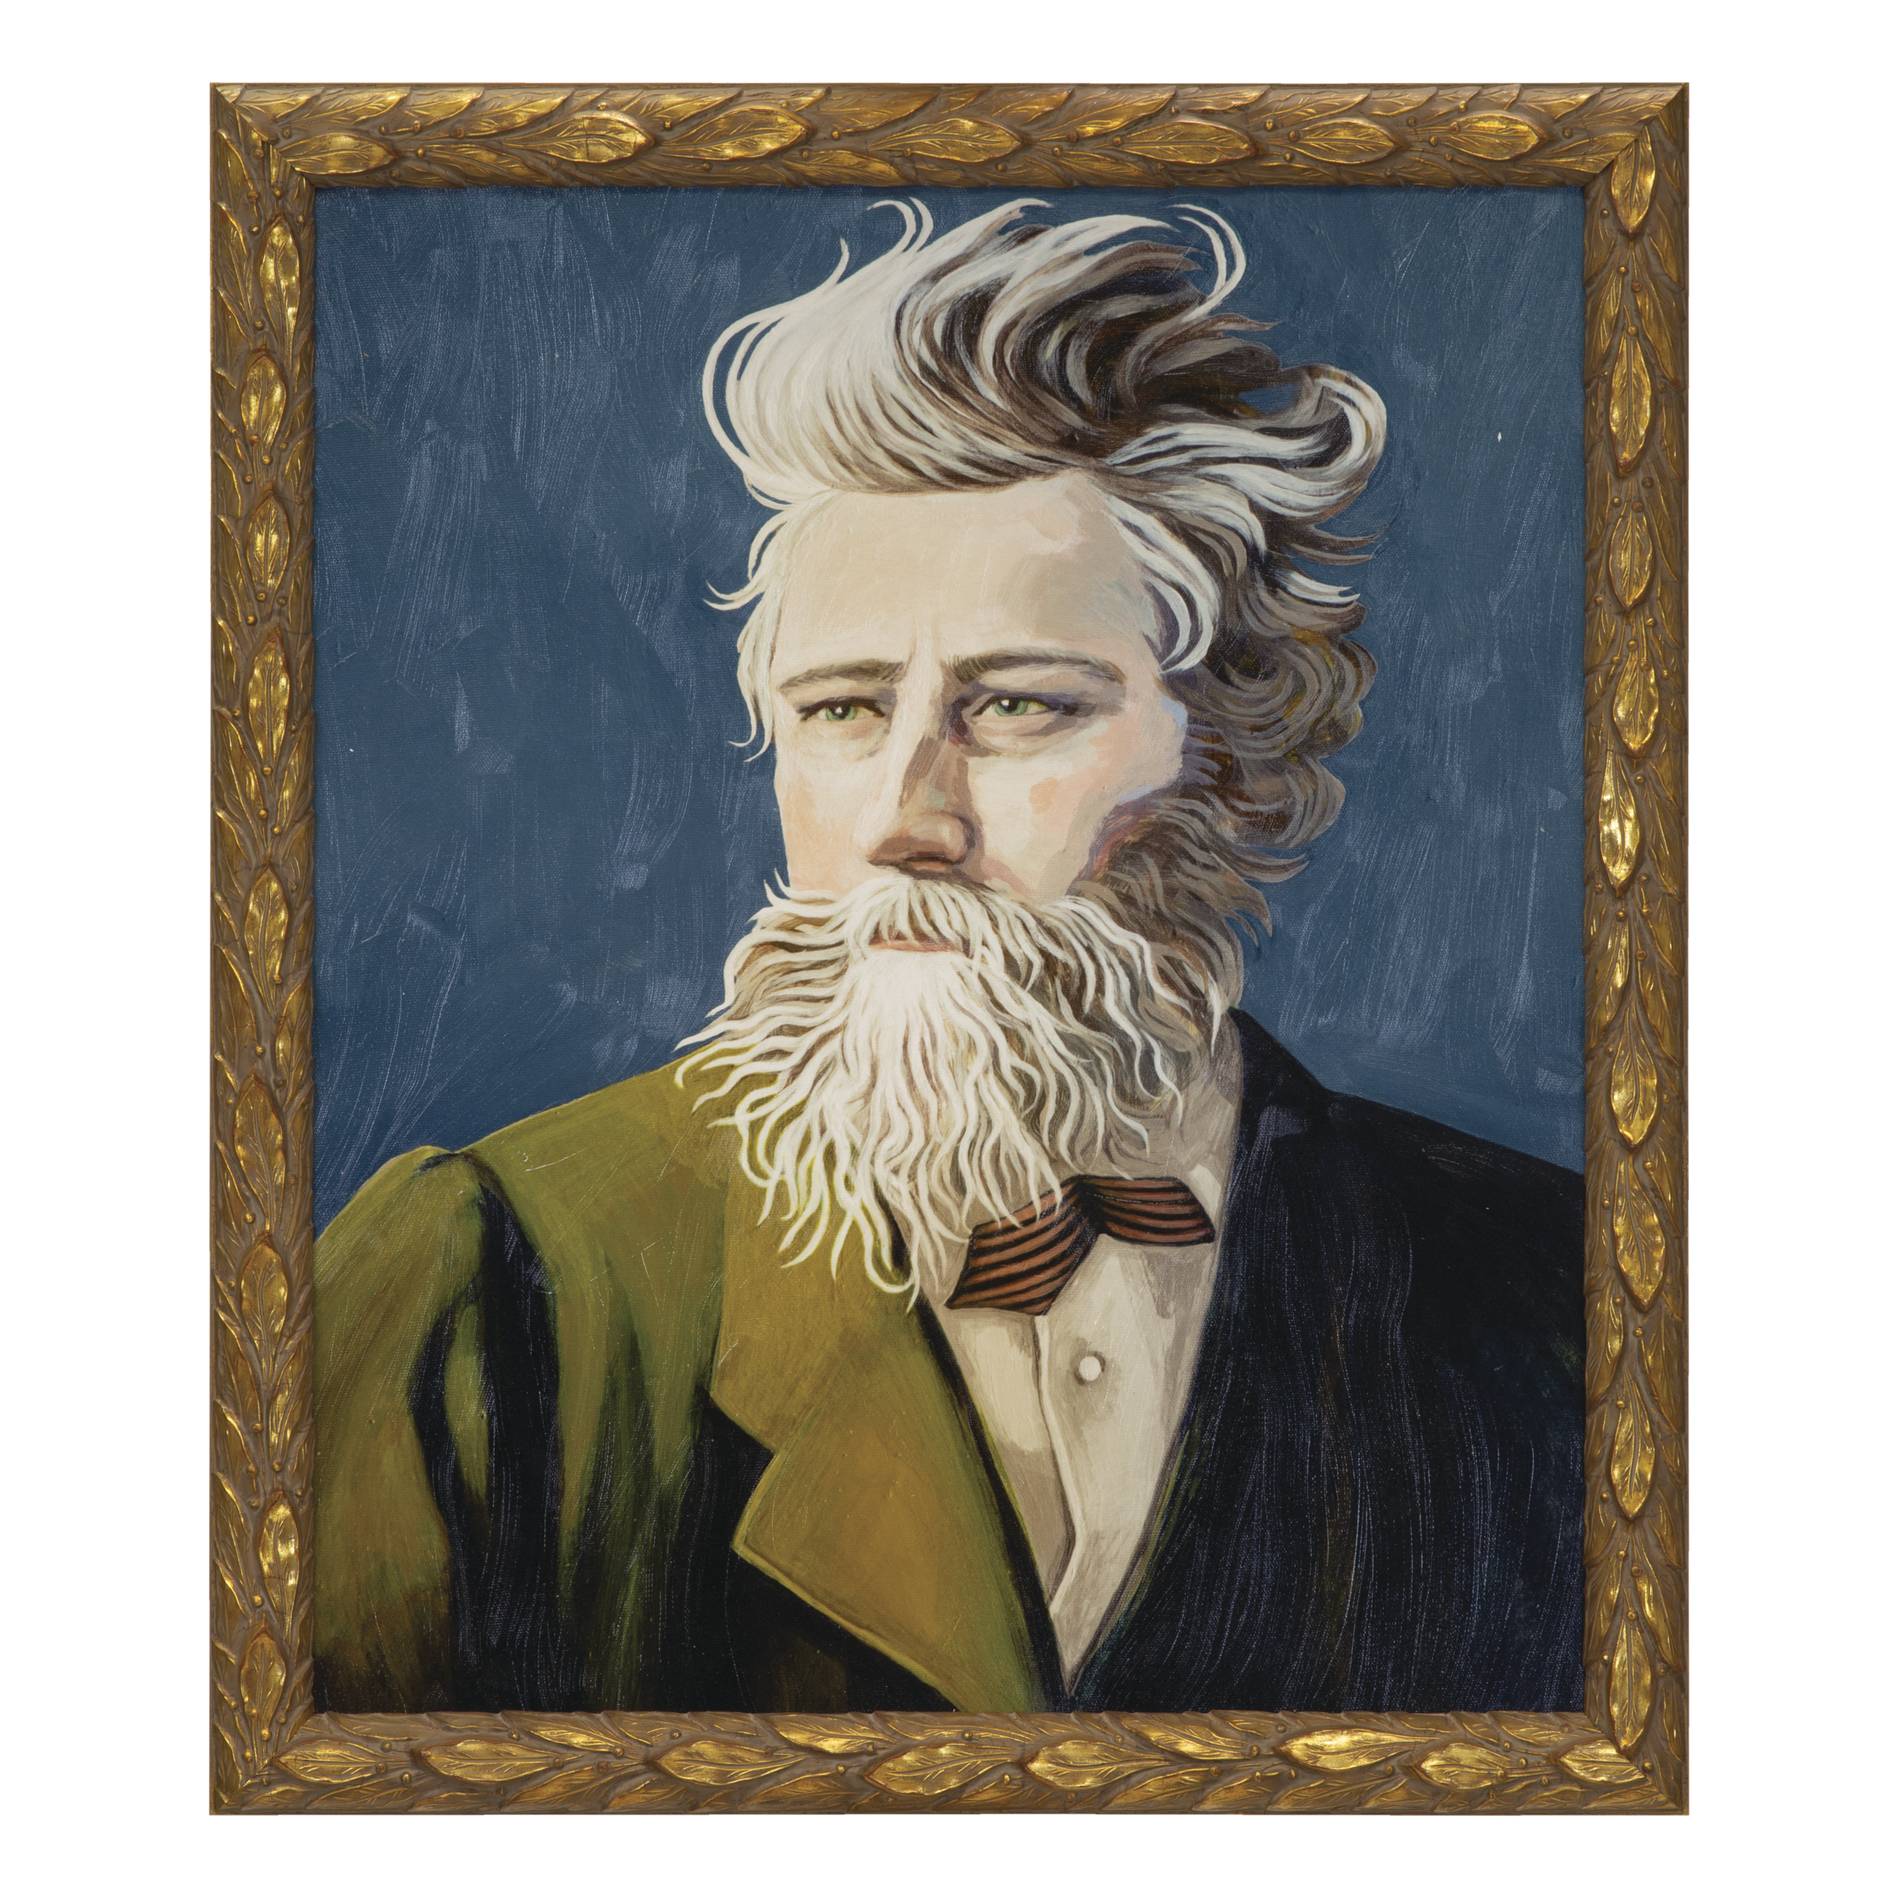 A portrait of William Morris